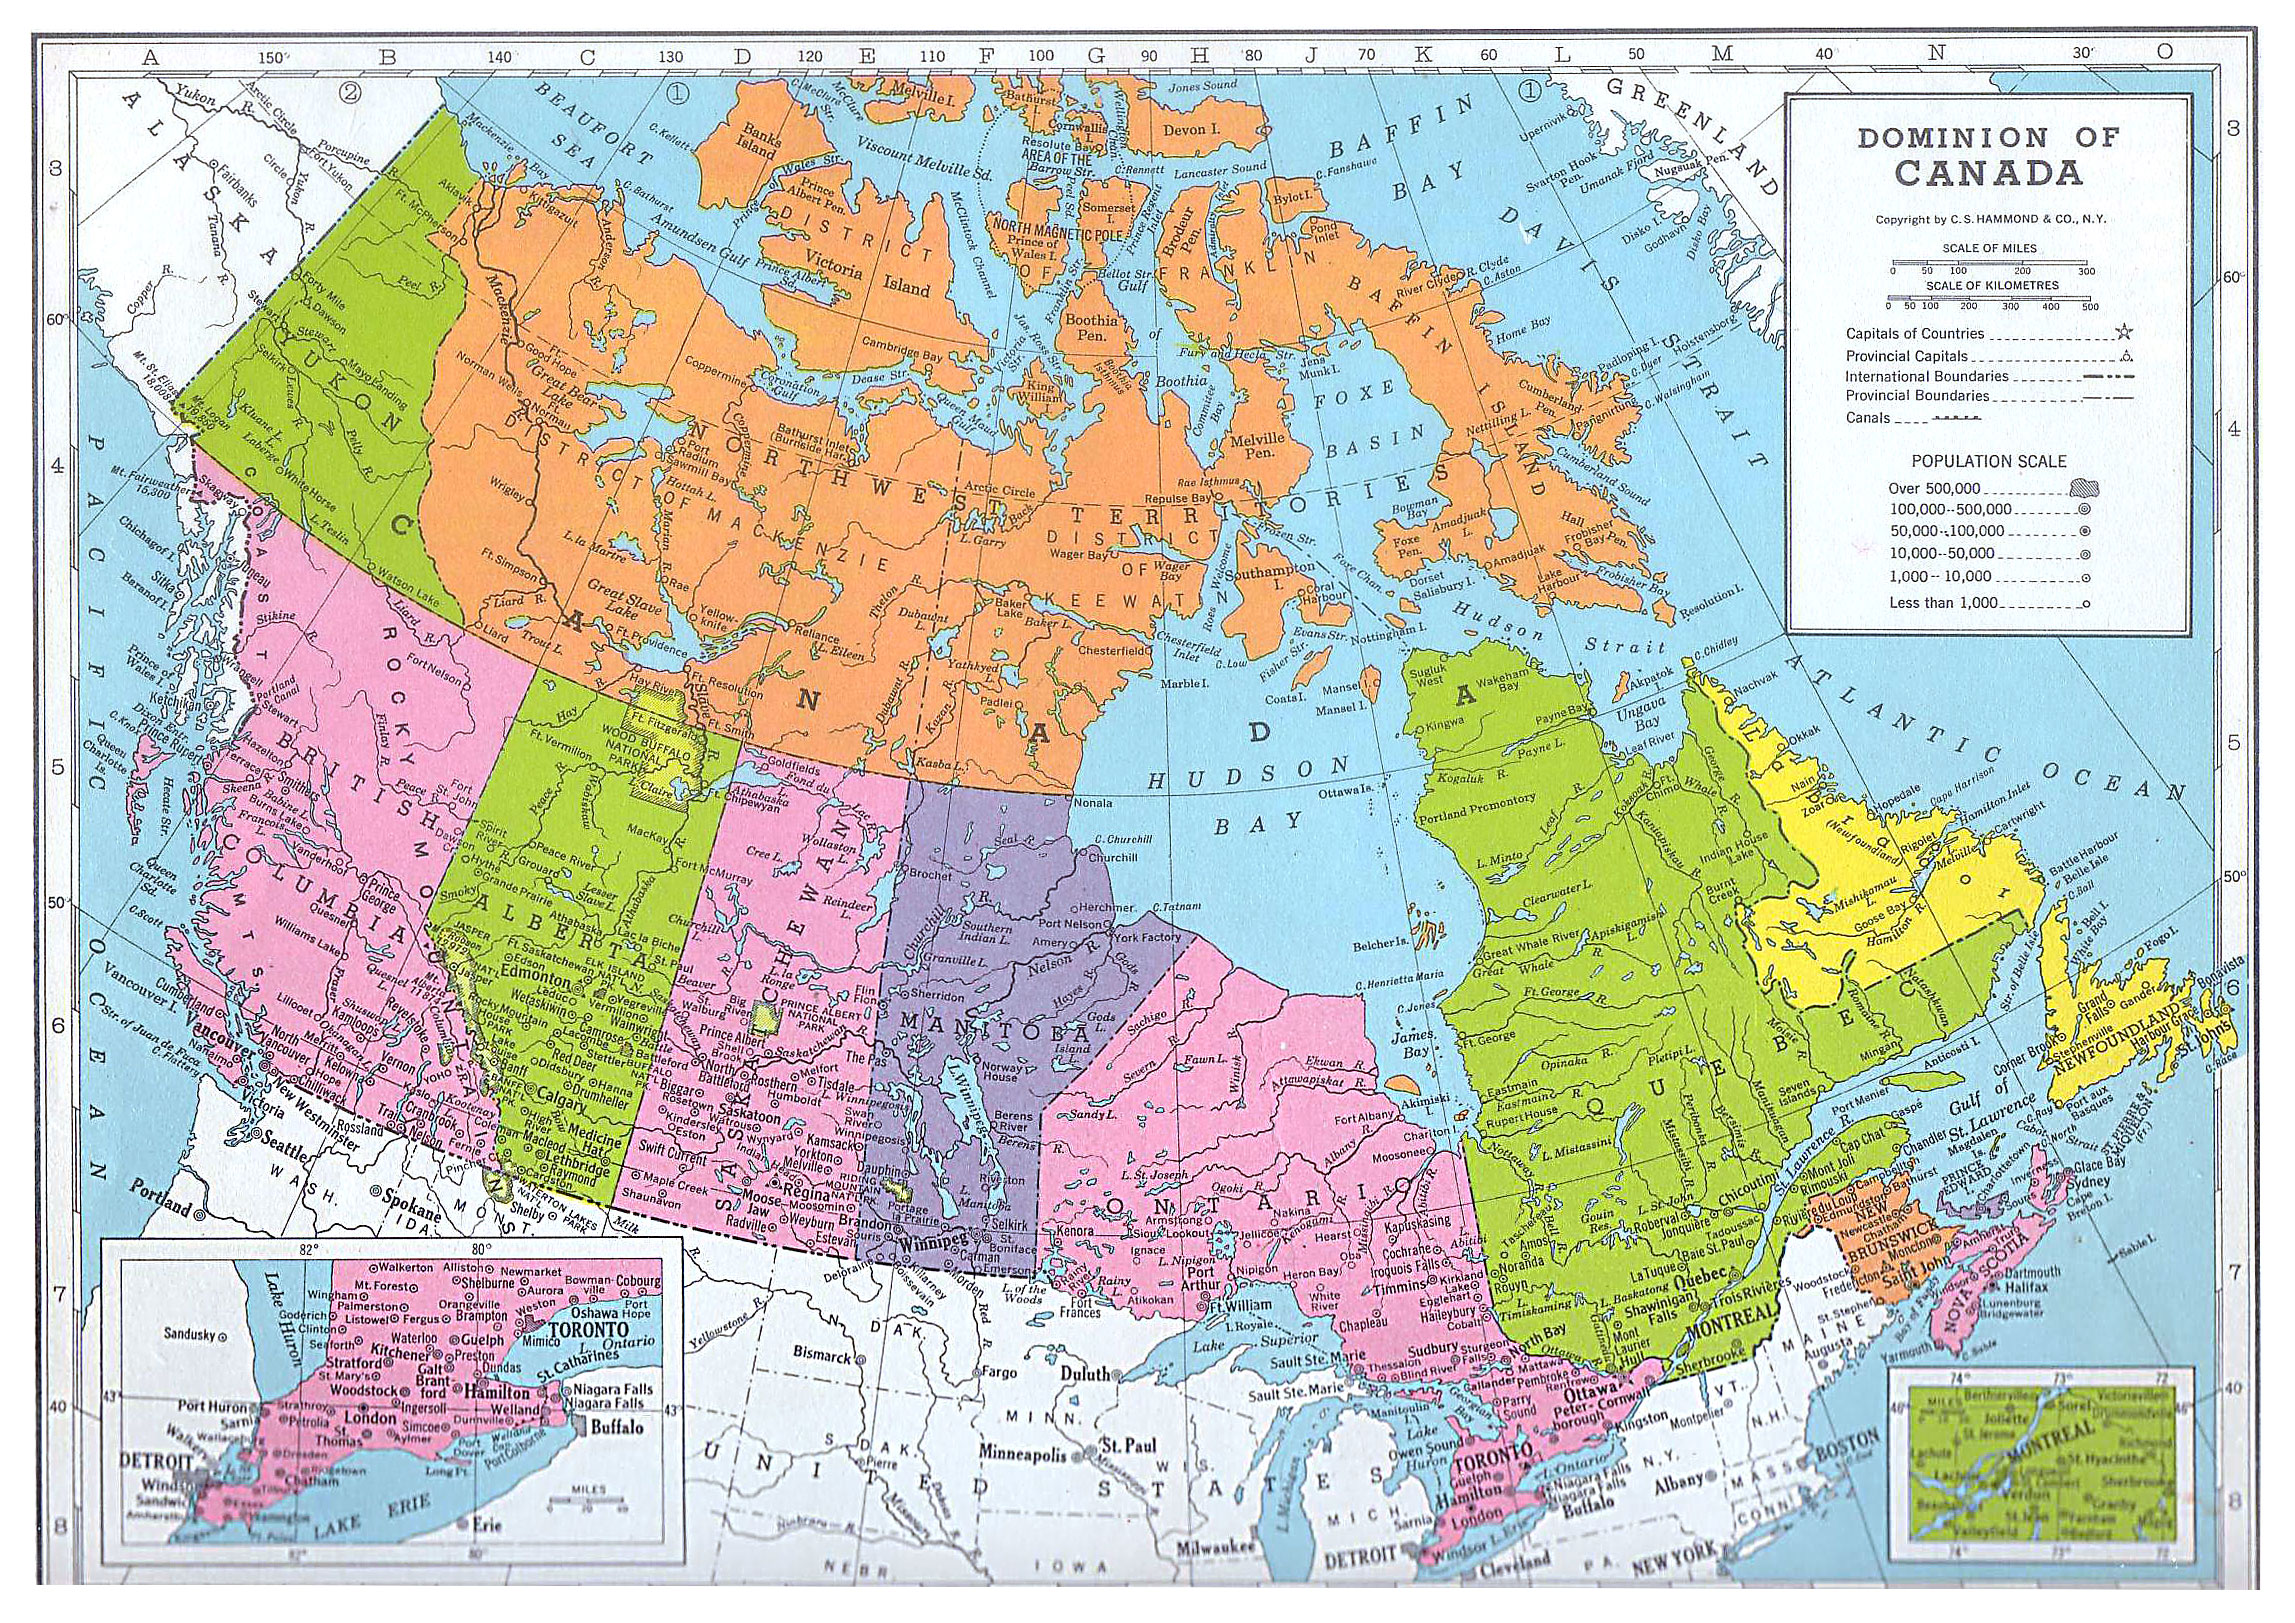 kuzey amerika haritasi kanadasi